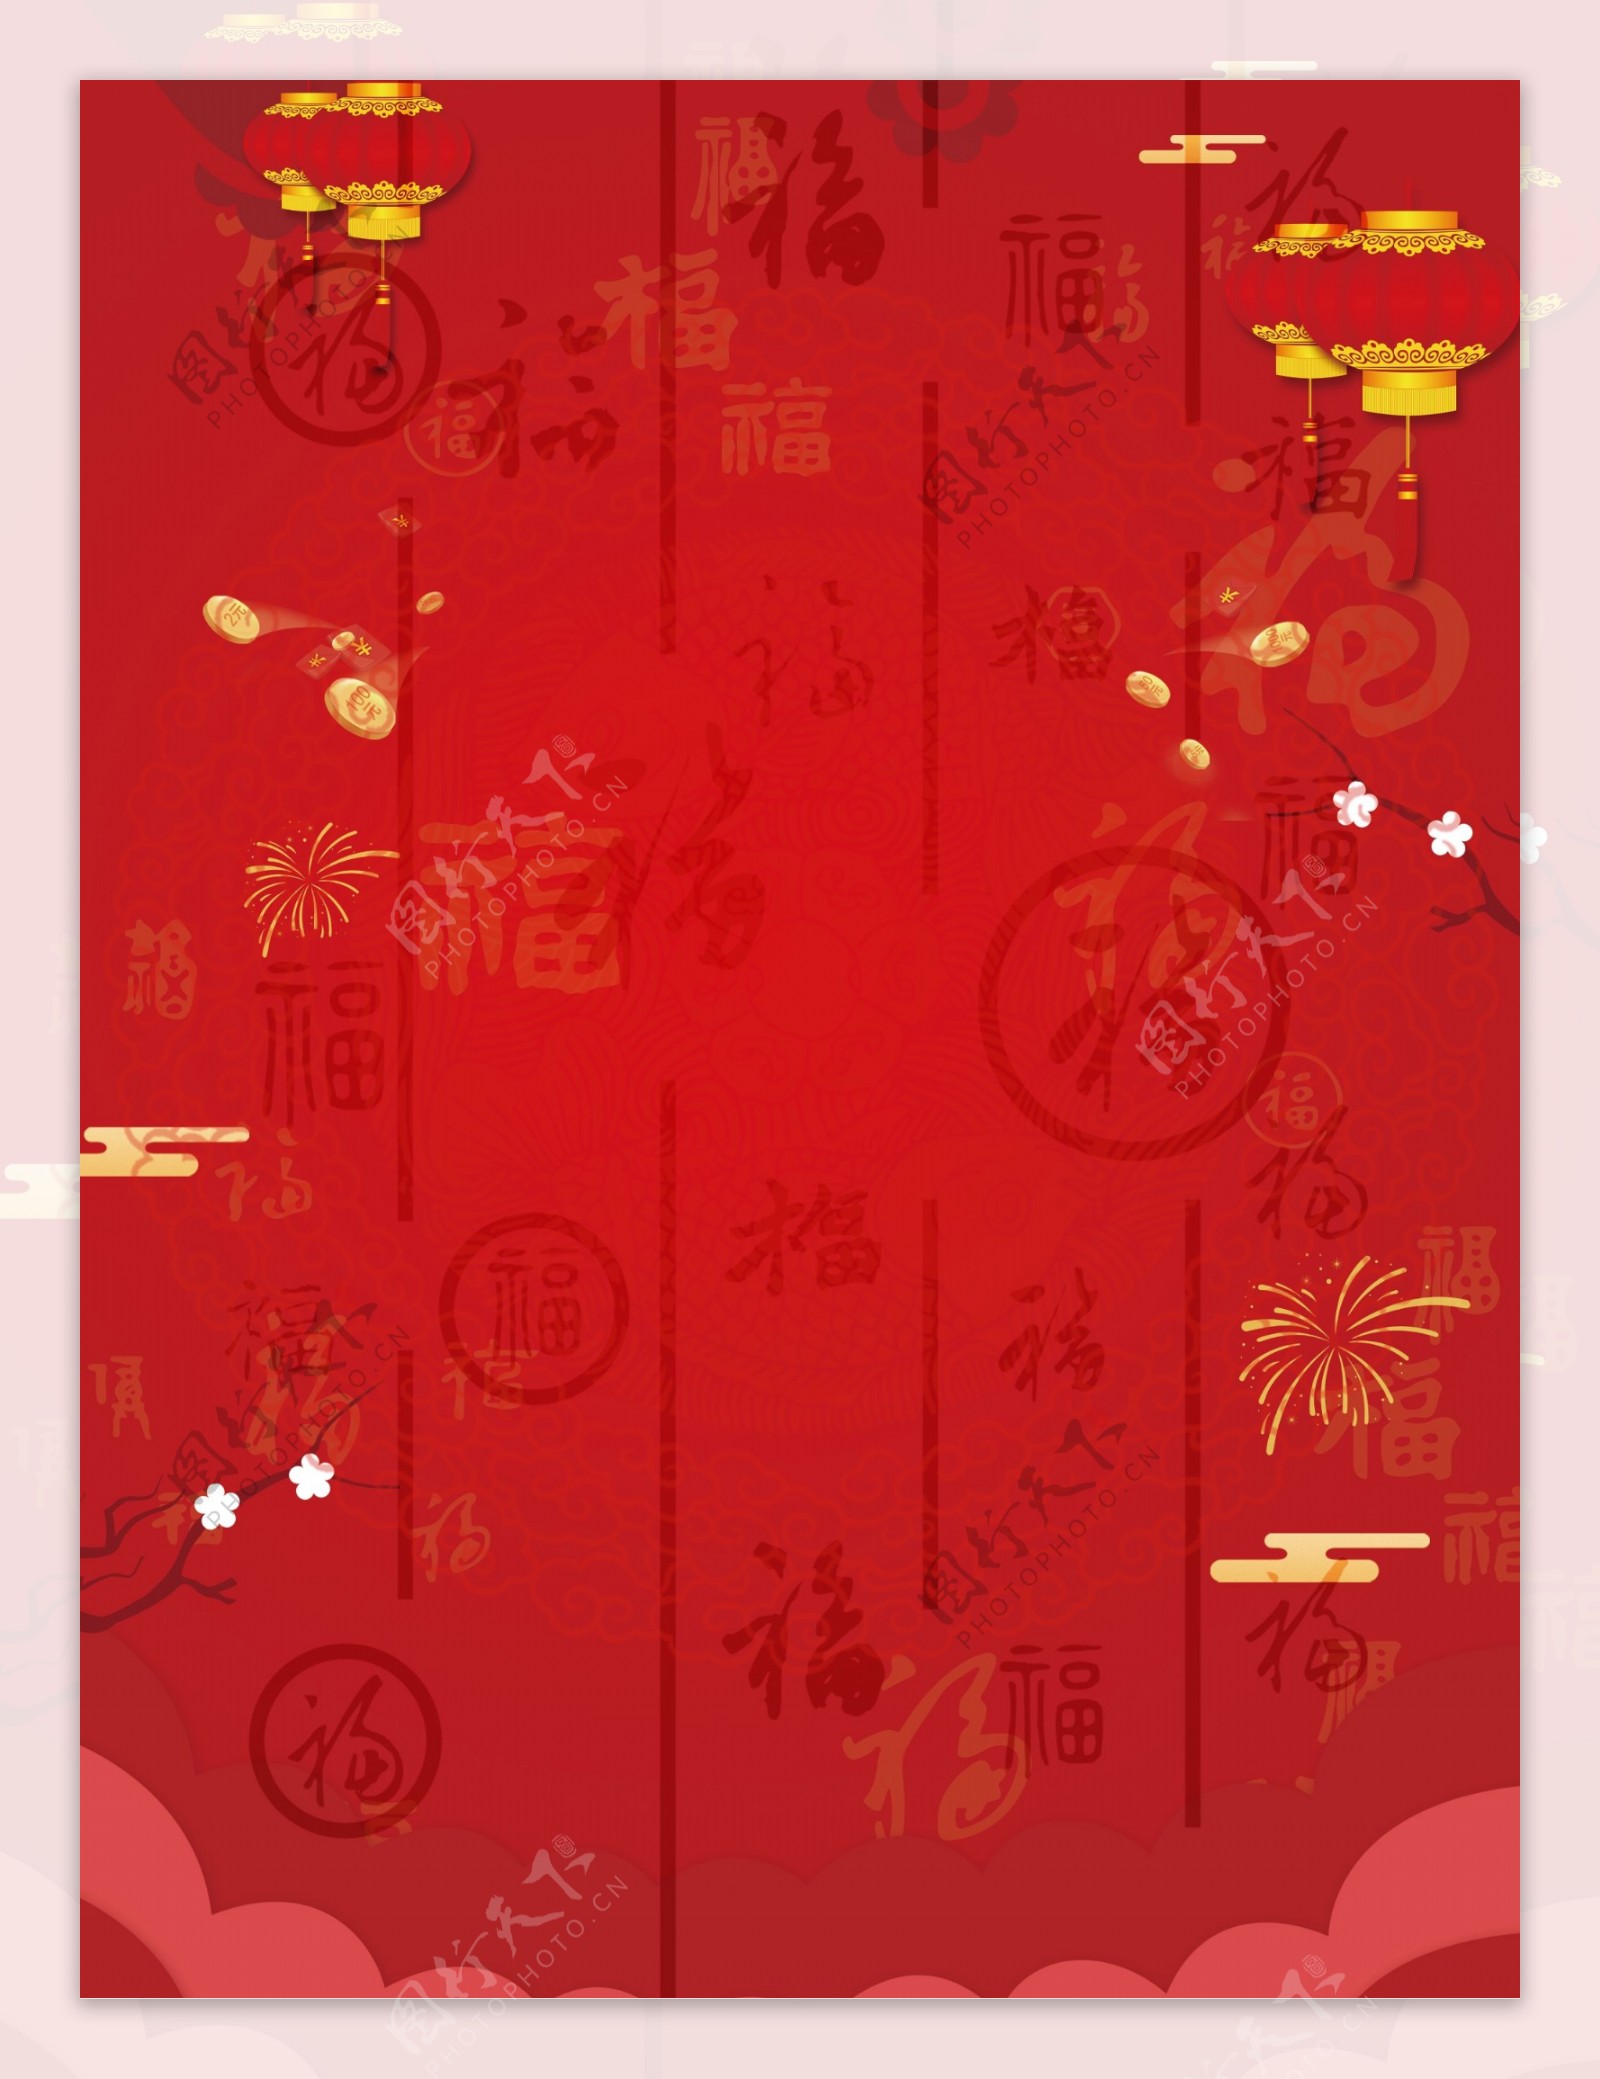 中国风福字烟花灯笼元旦背景设计